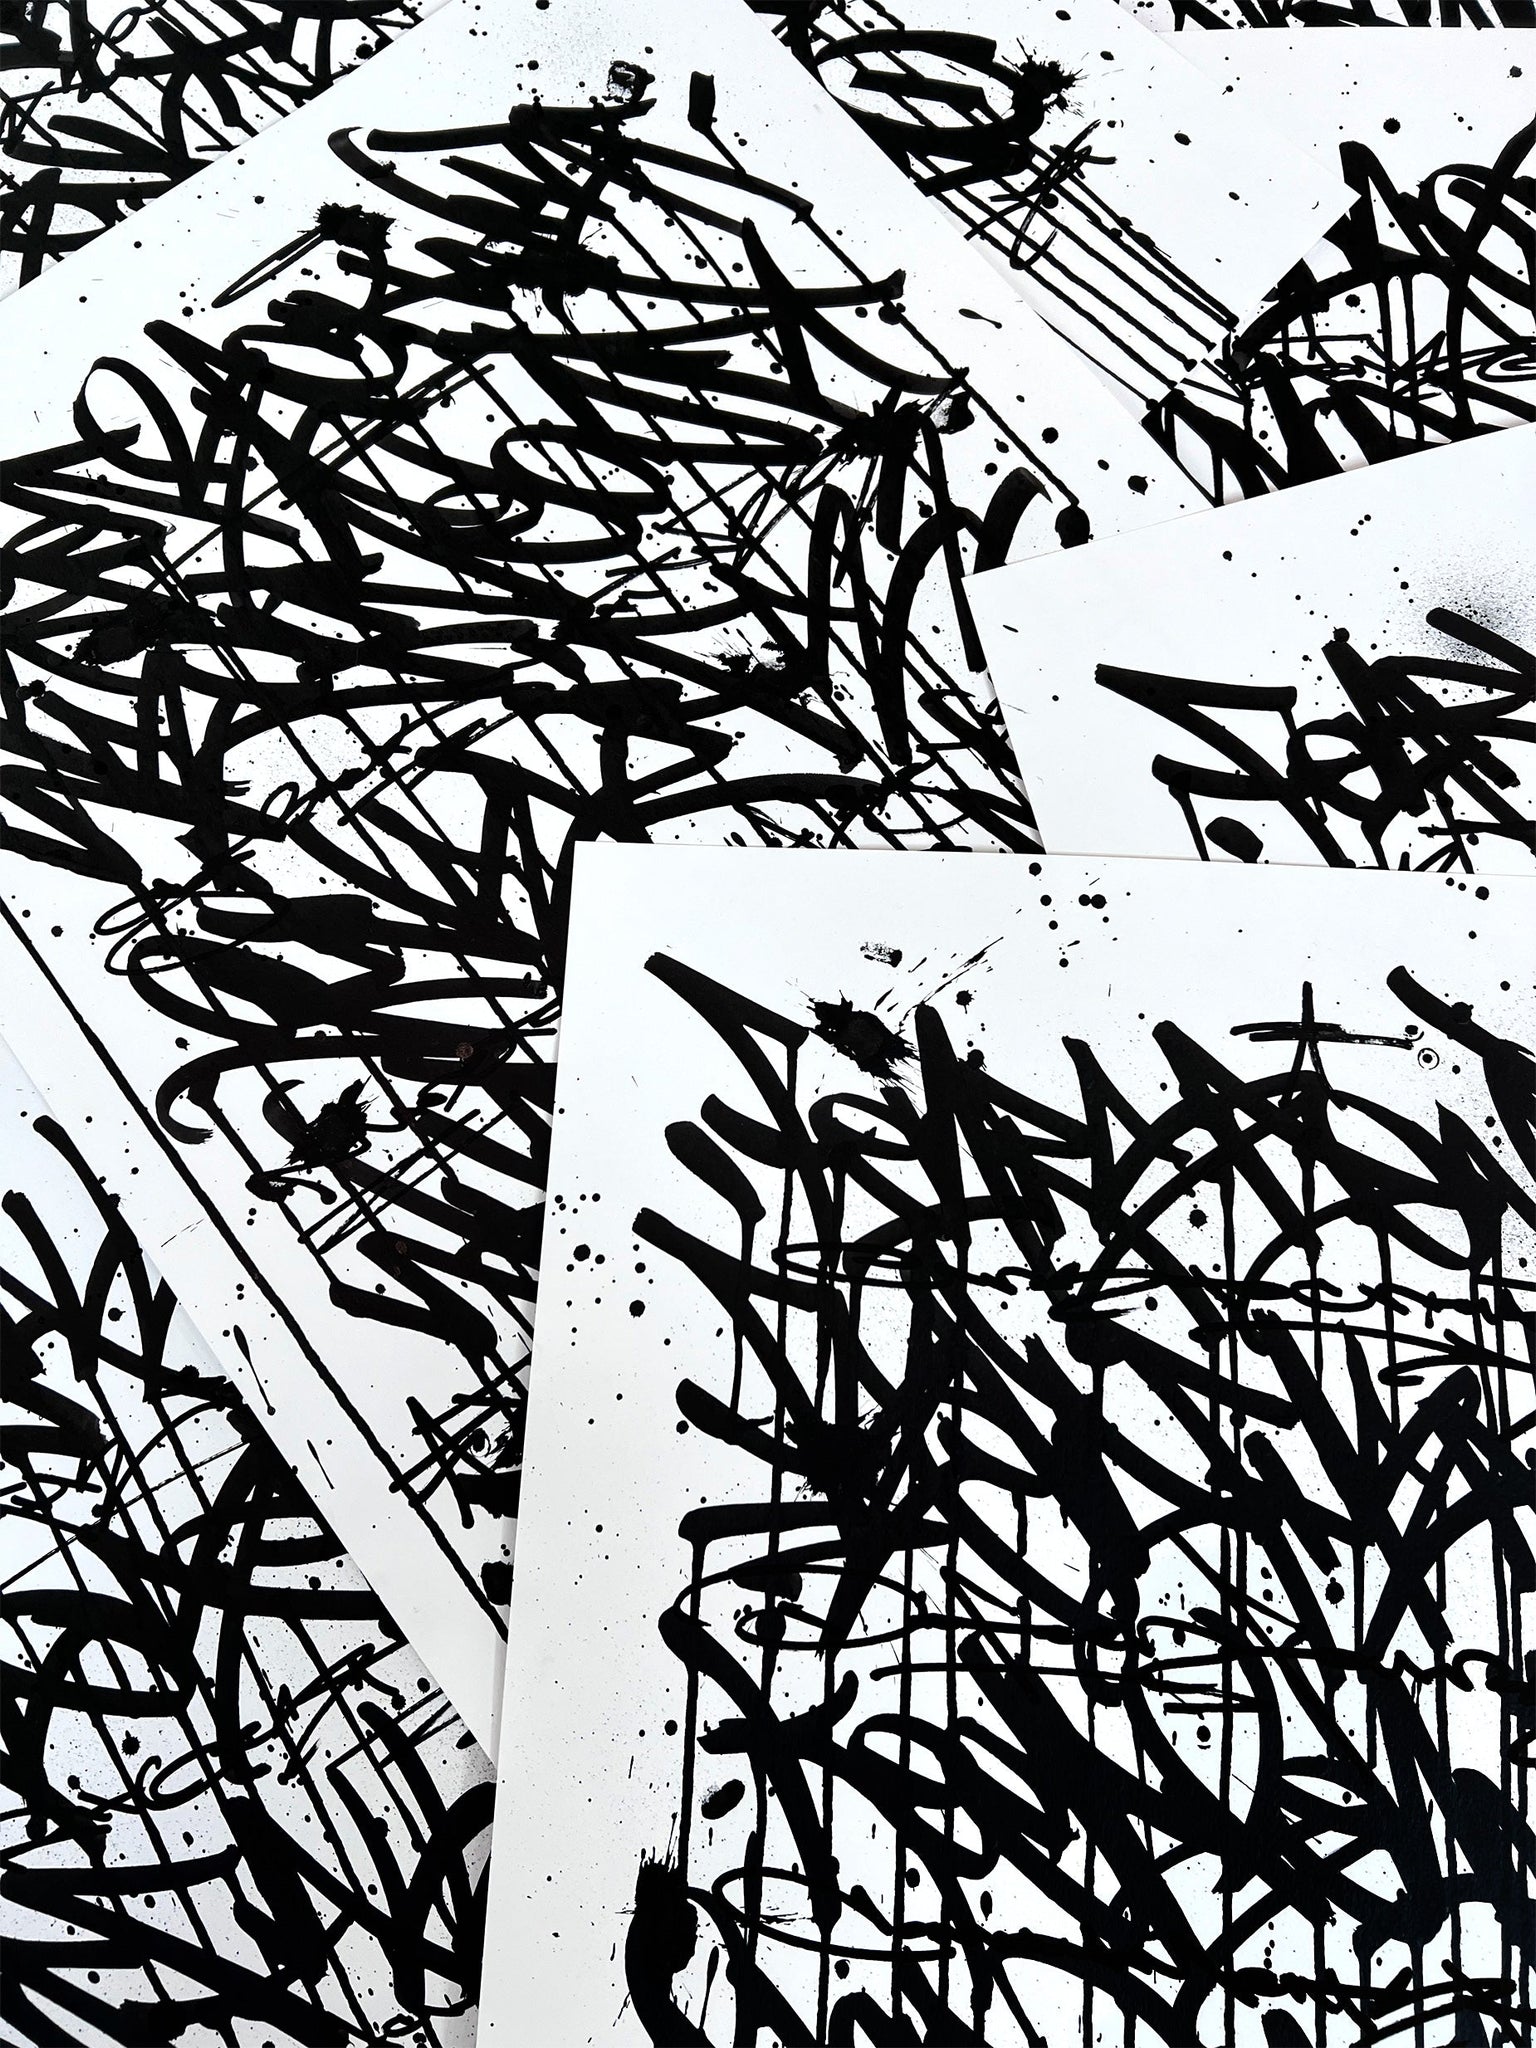 Fear Less Live More 02 - original on paper 50 x 70 cm